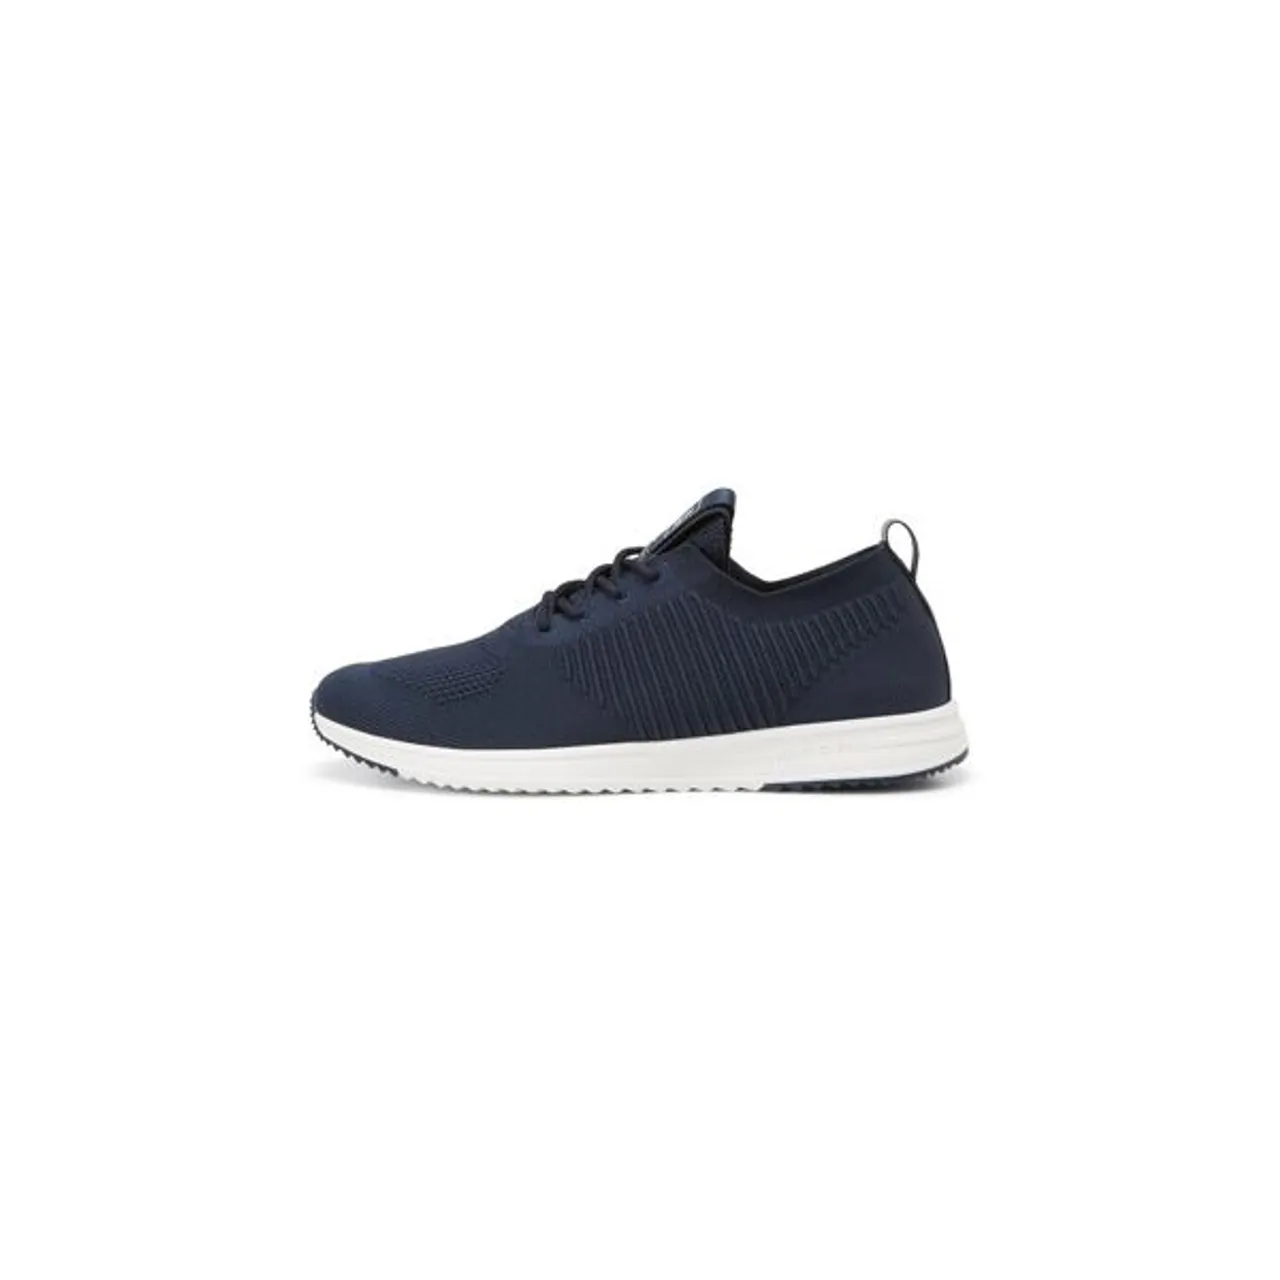 Sneaker MARC O'POLO "aus elastischem Jacquard-Knit" Gr. 48, blau Herren Schuhe Schnürhalbschuhe